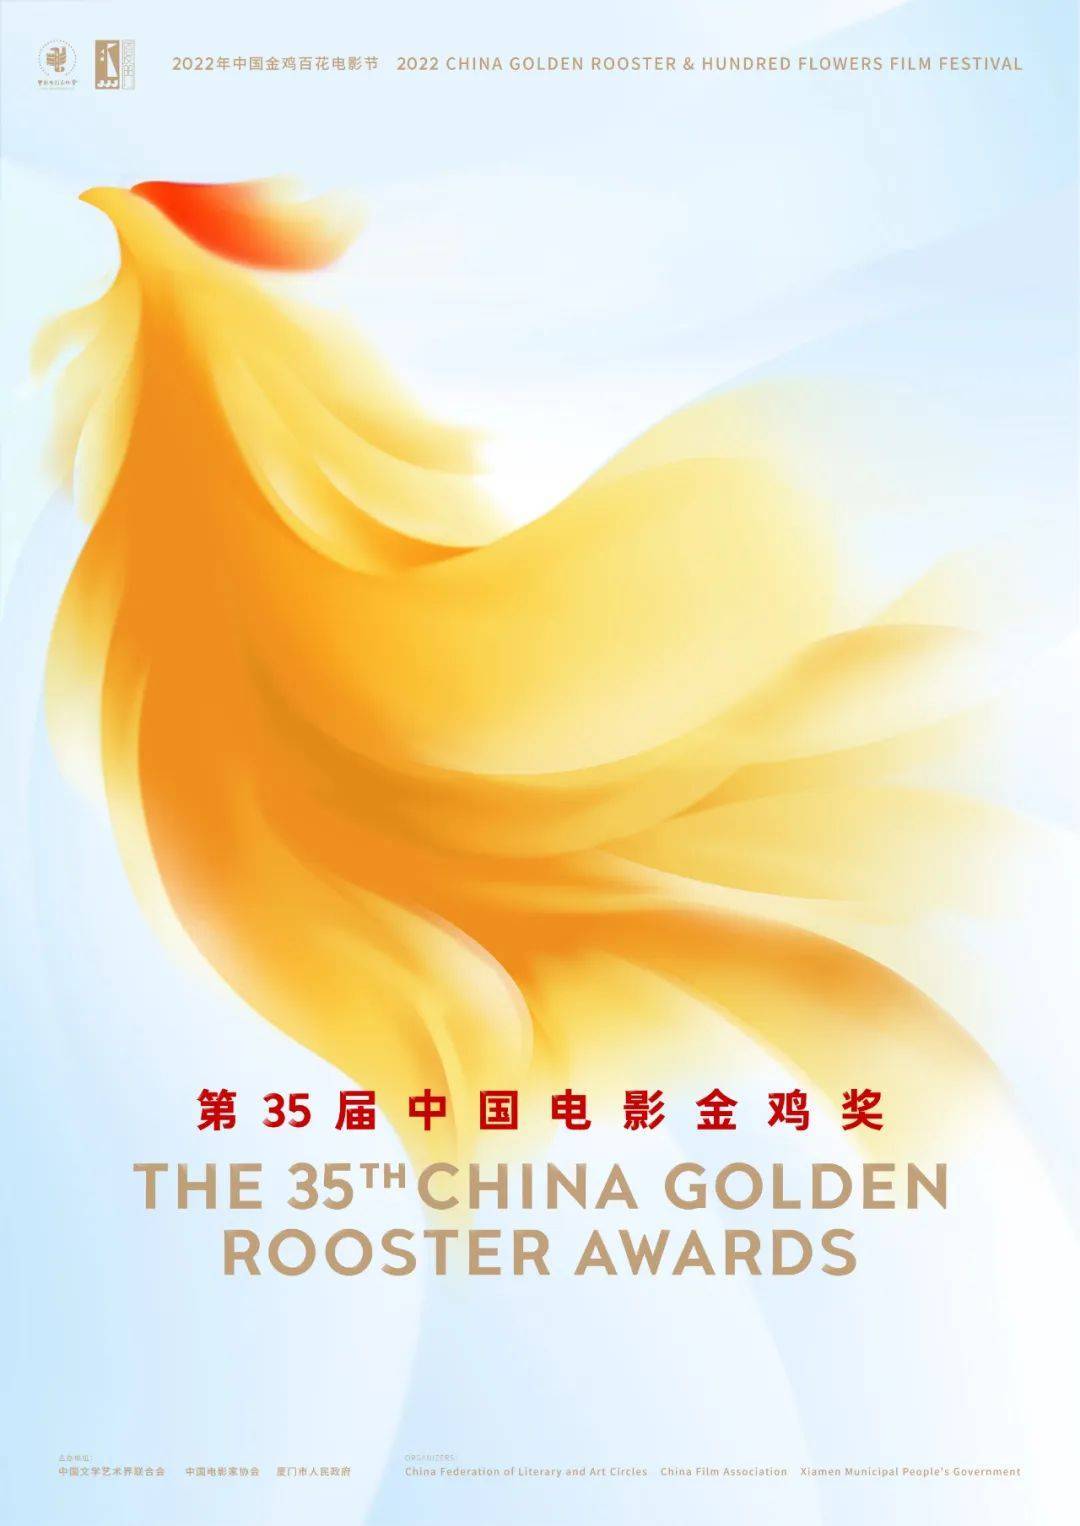 2022年中国金鸡百花电影节11月10日至12日在厦门举办-QQ1000资源网